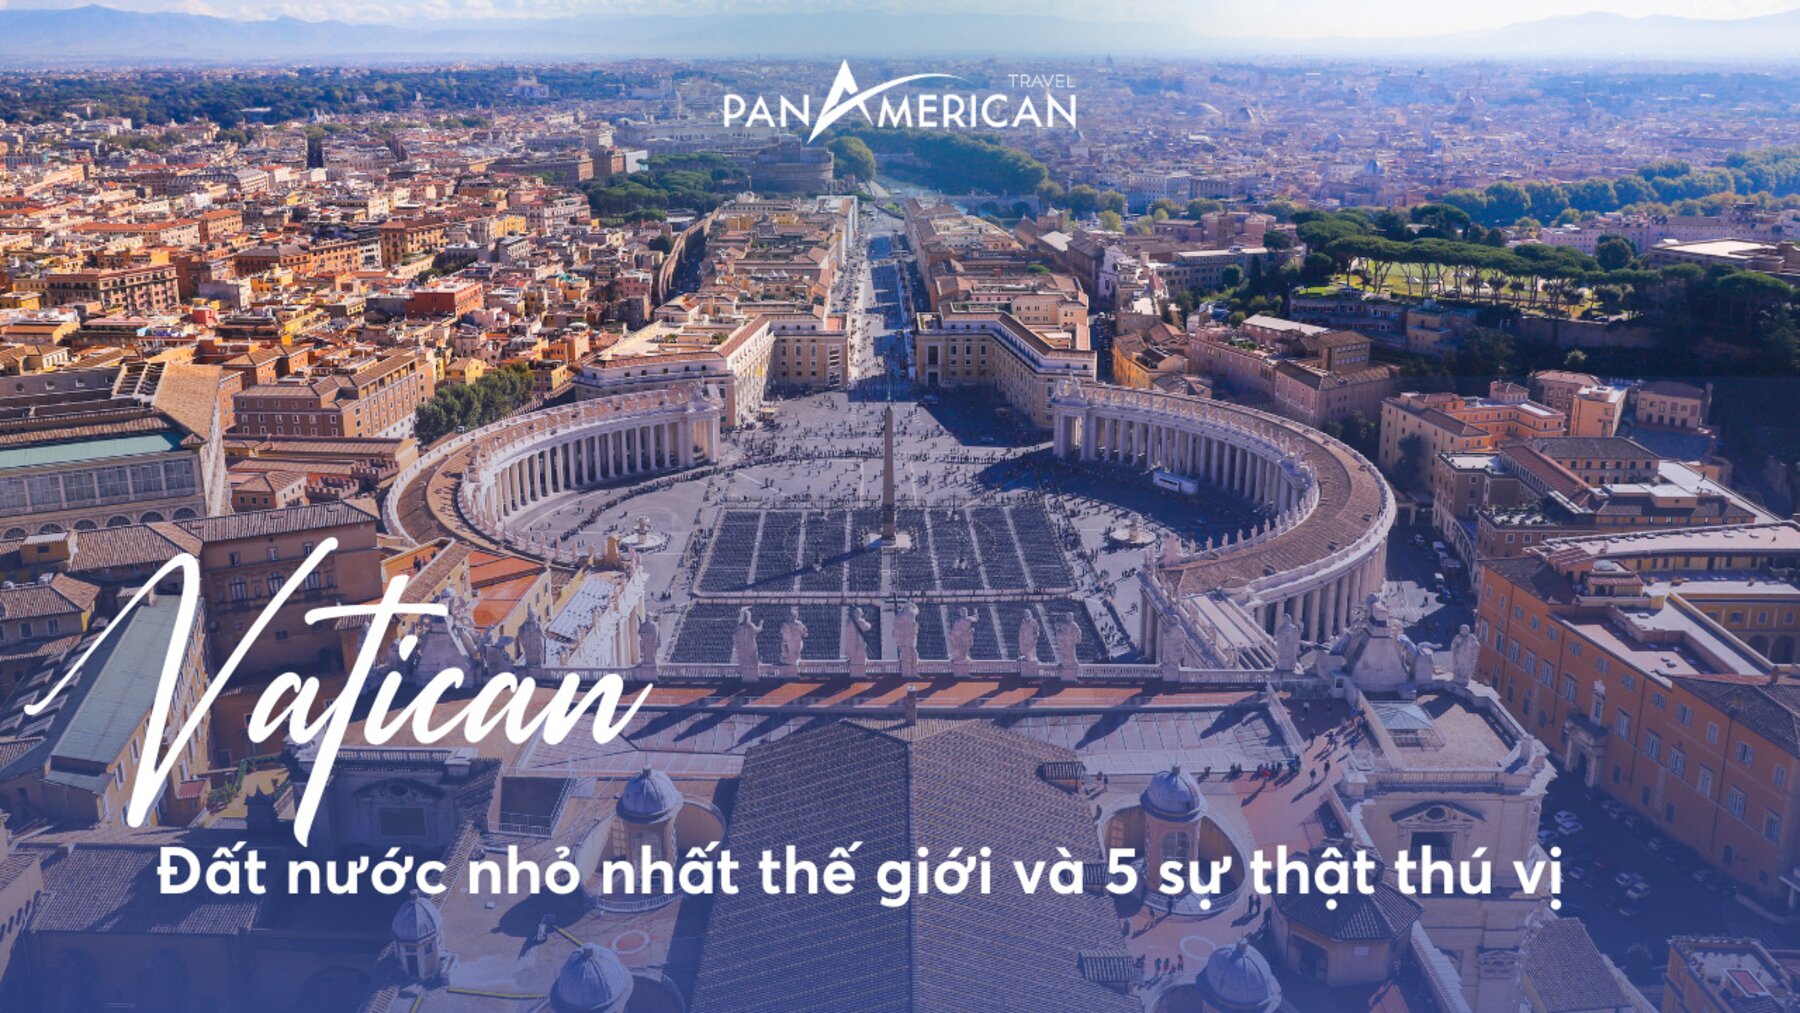 Vatican - đất nước nhỏ nhất thế giới và 5 sự thật thú vị